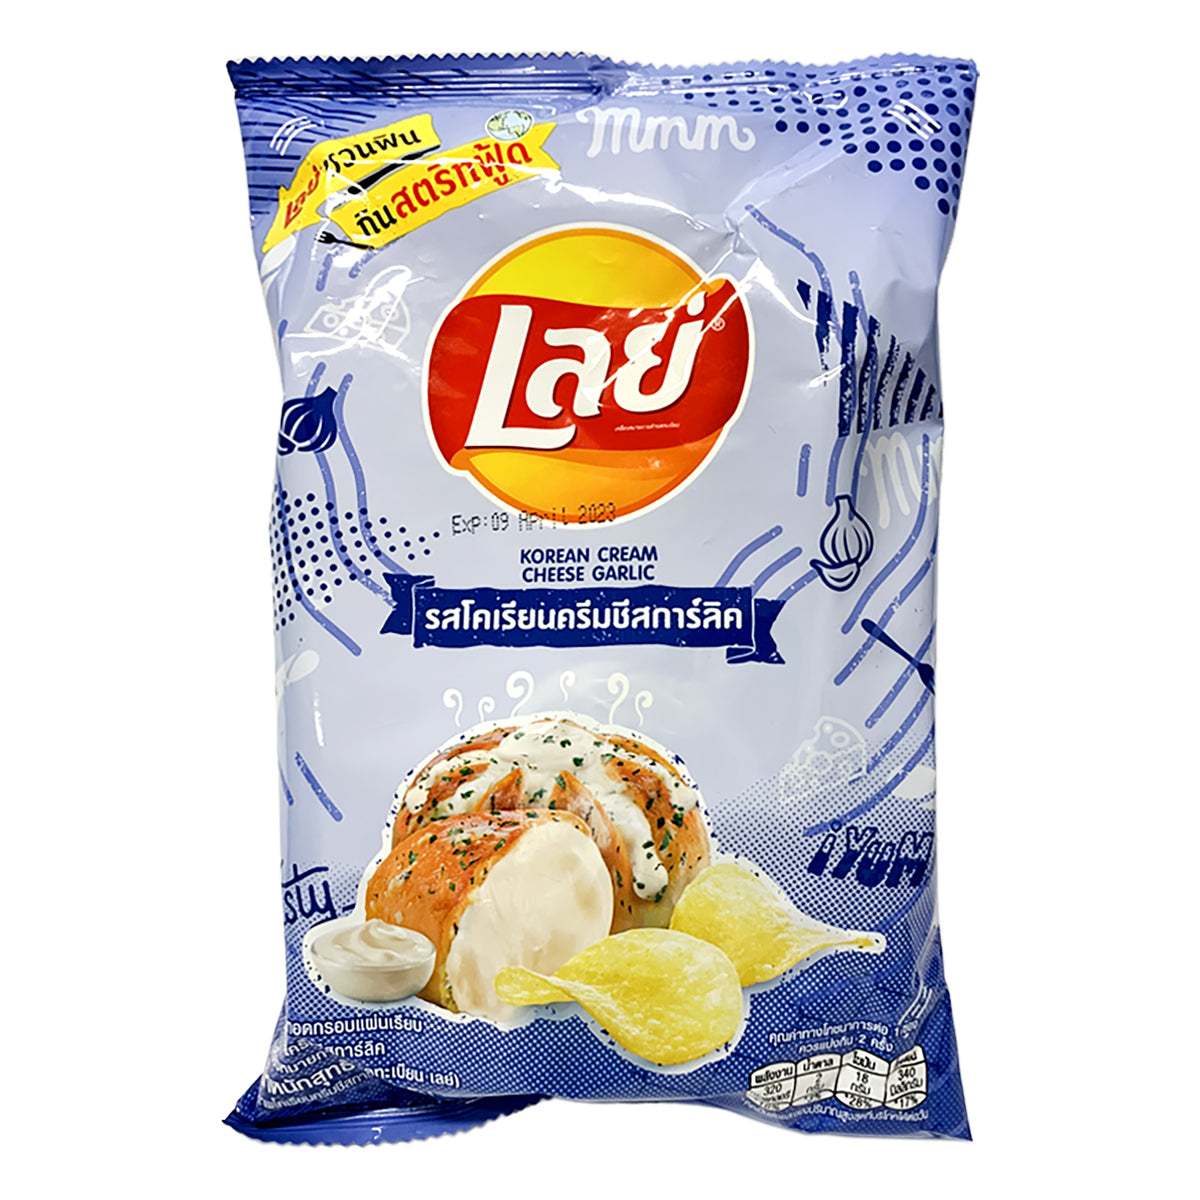 lay's potato chips korean cream cheese flavor - 48g